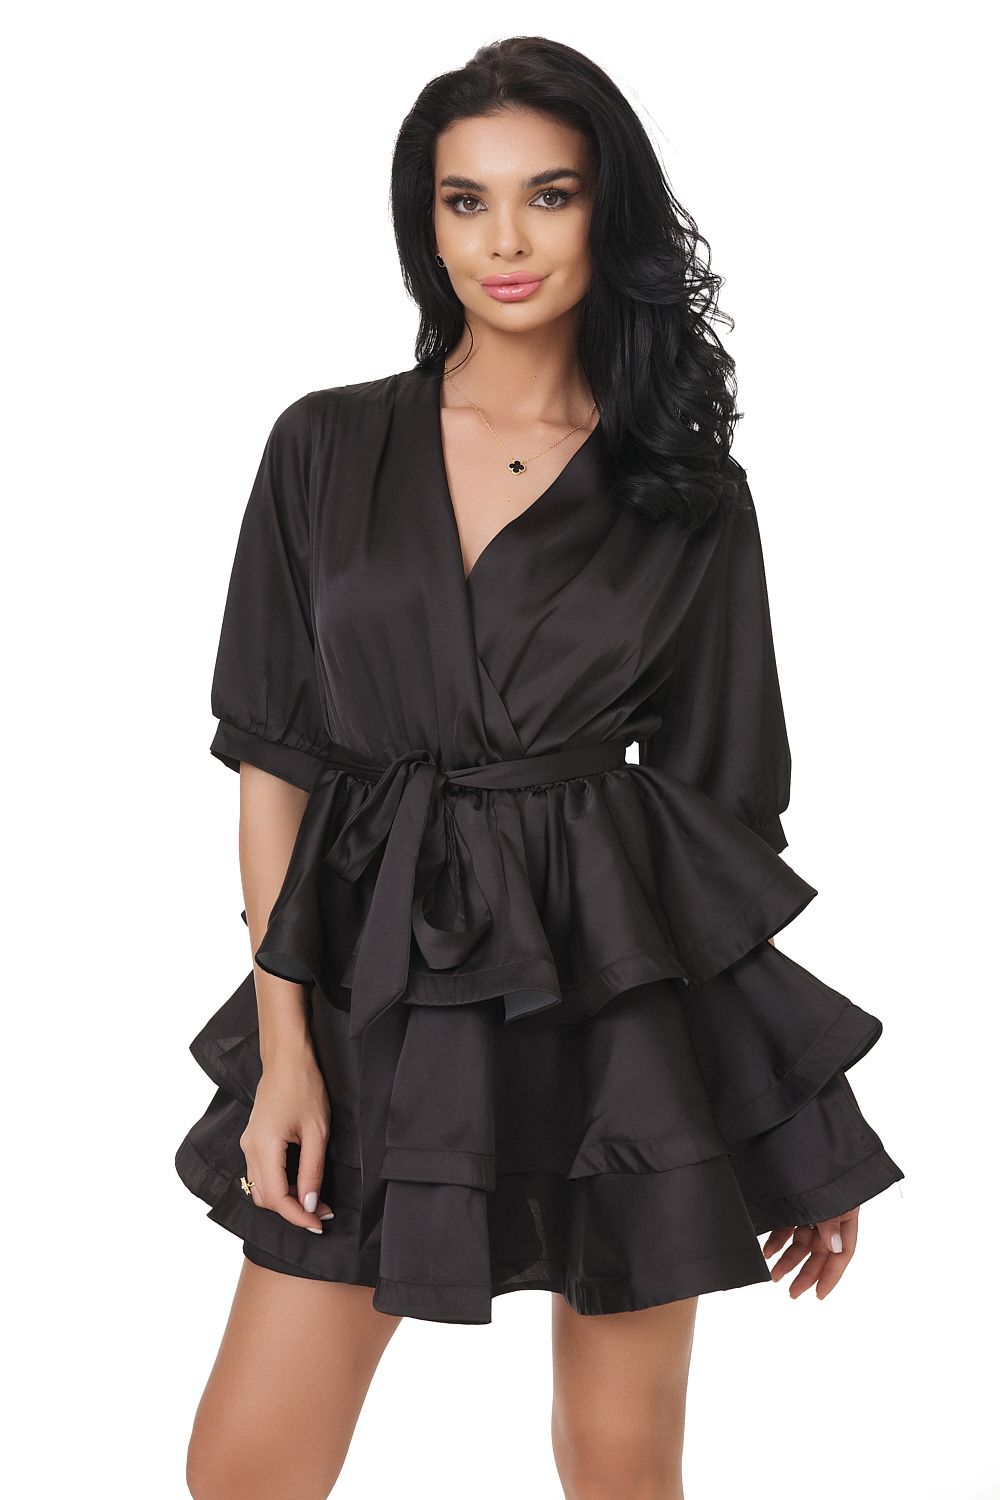 Short black dress for women, Meredith Bogas